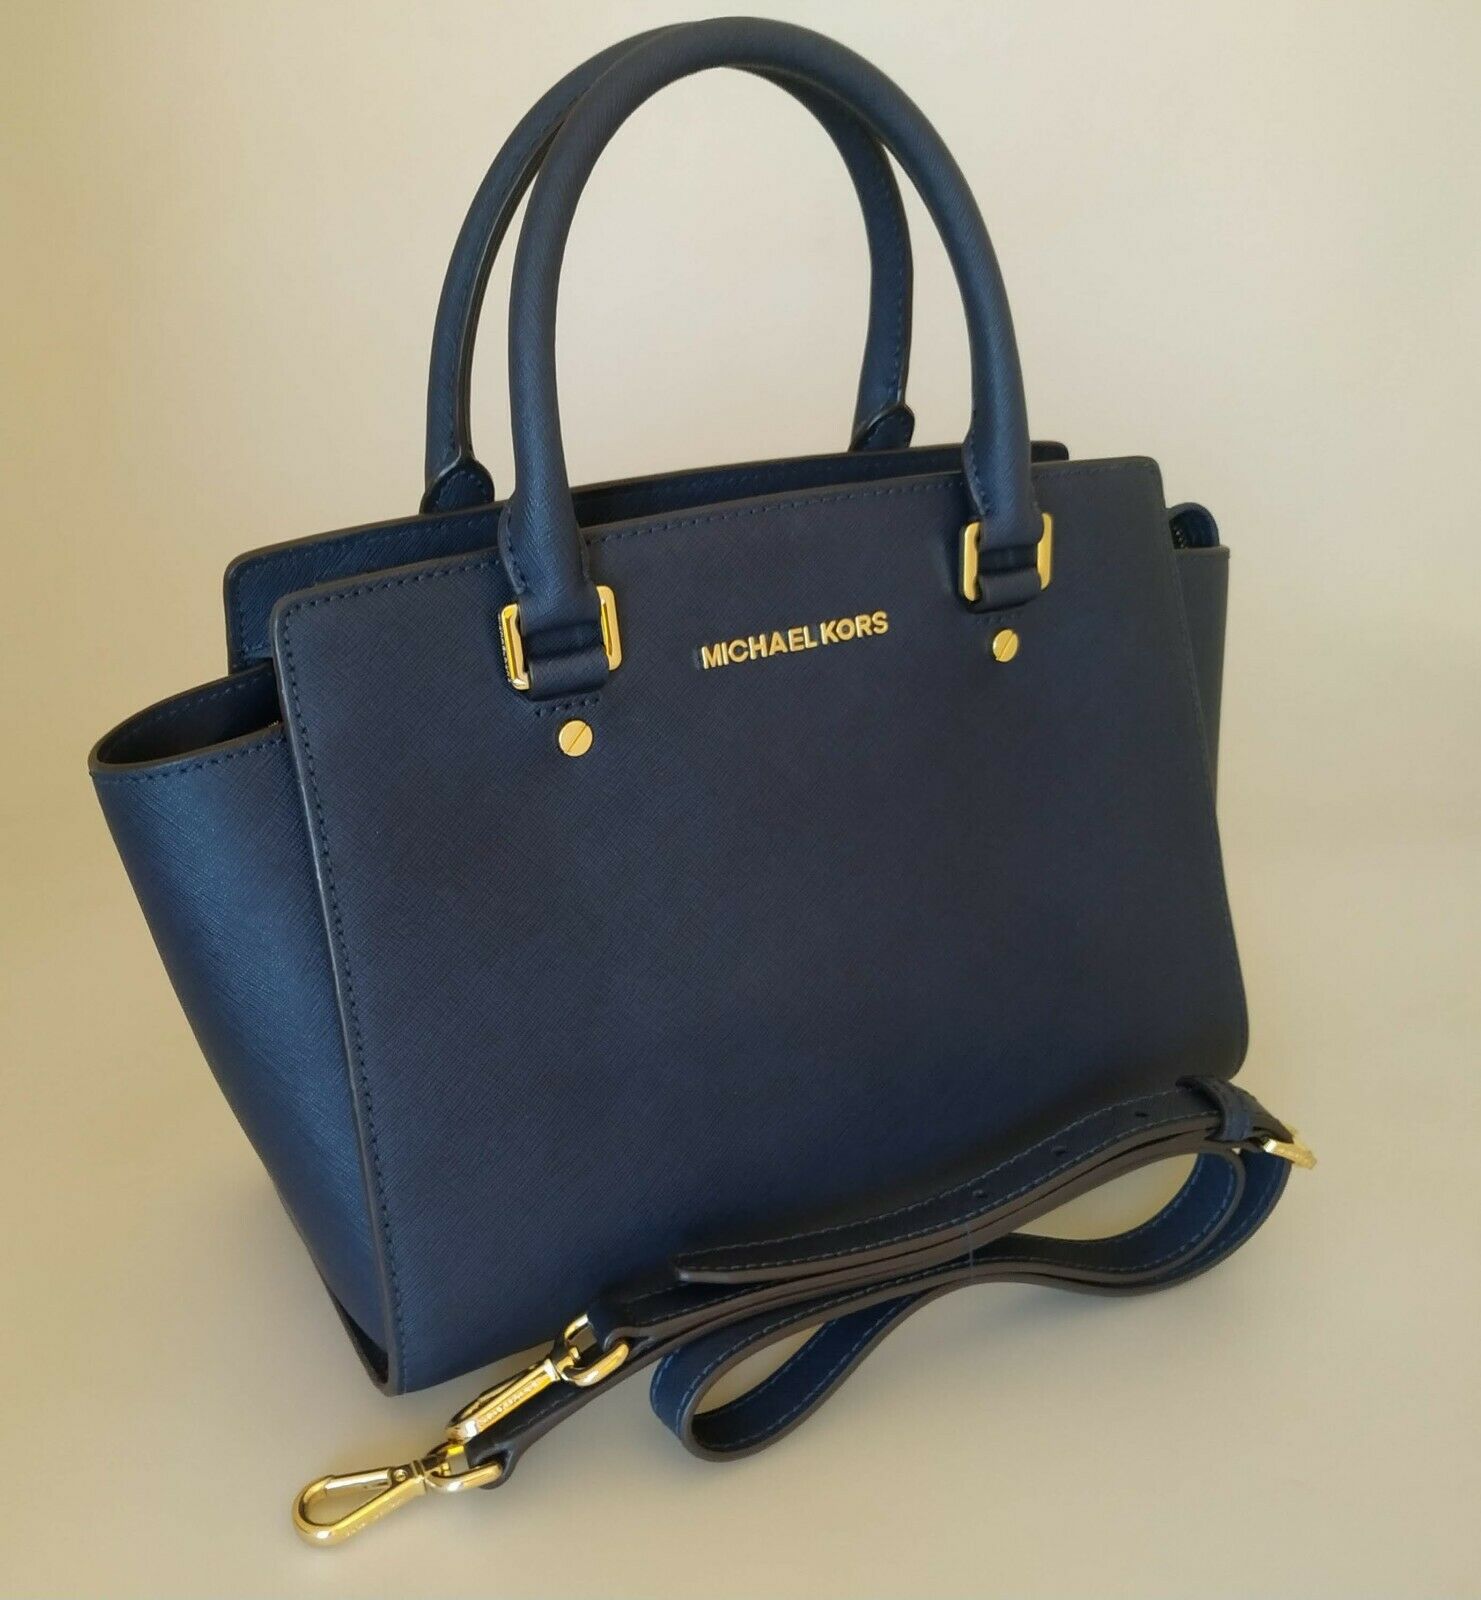 Michael Kors Selma Leather Navy Blue Gold Studded Satchel Handbag XL $428